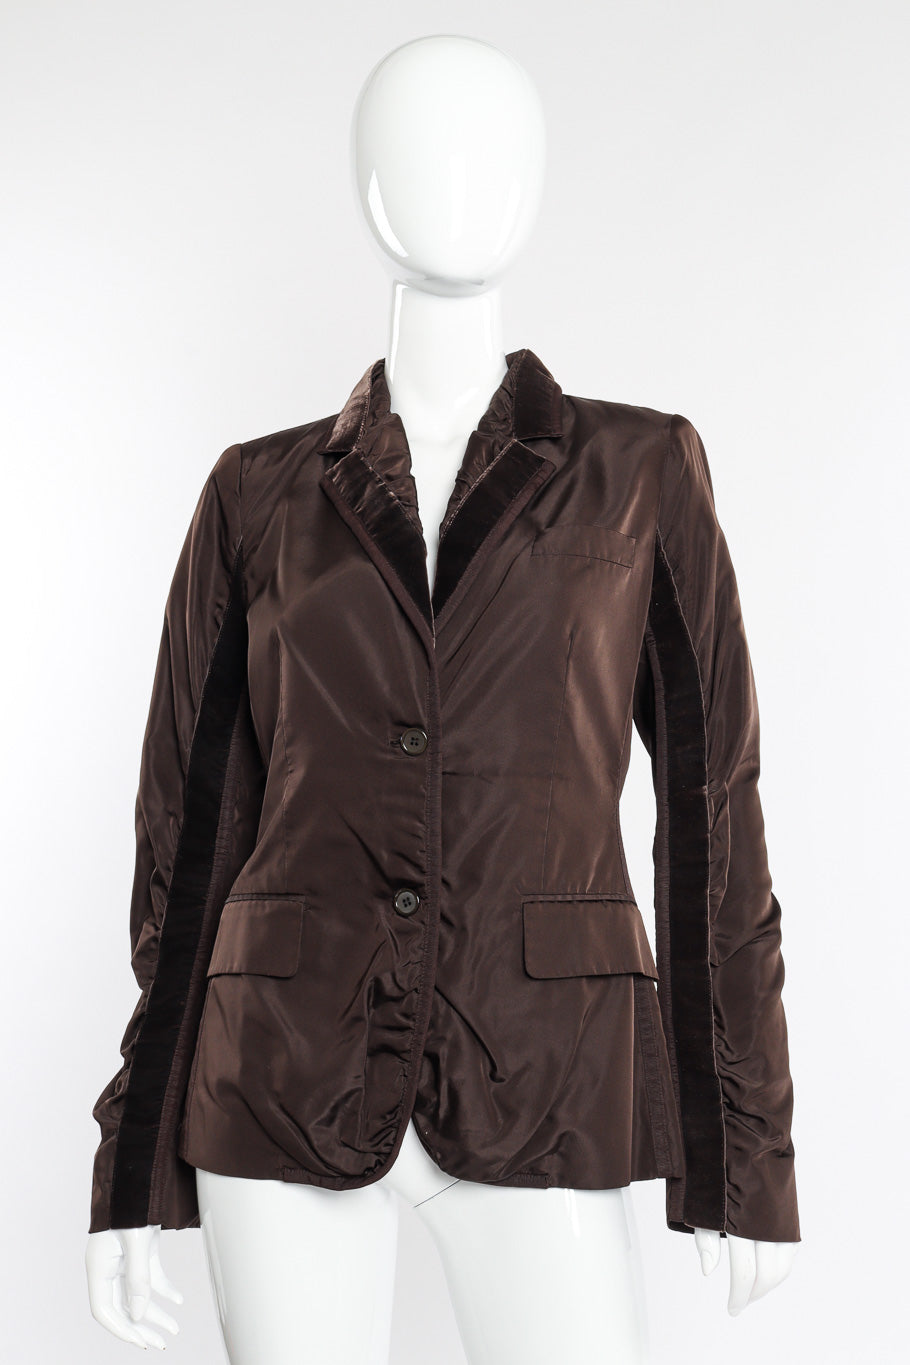 Silk velvet jacket by Yves Saint Laurent on mannequin @recessla